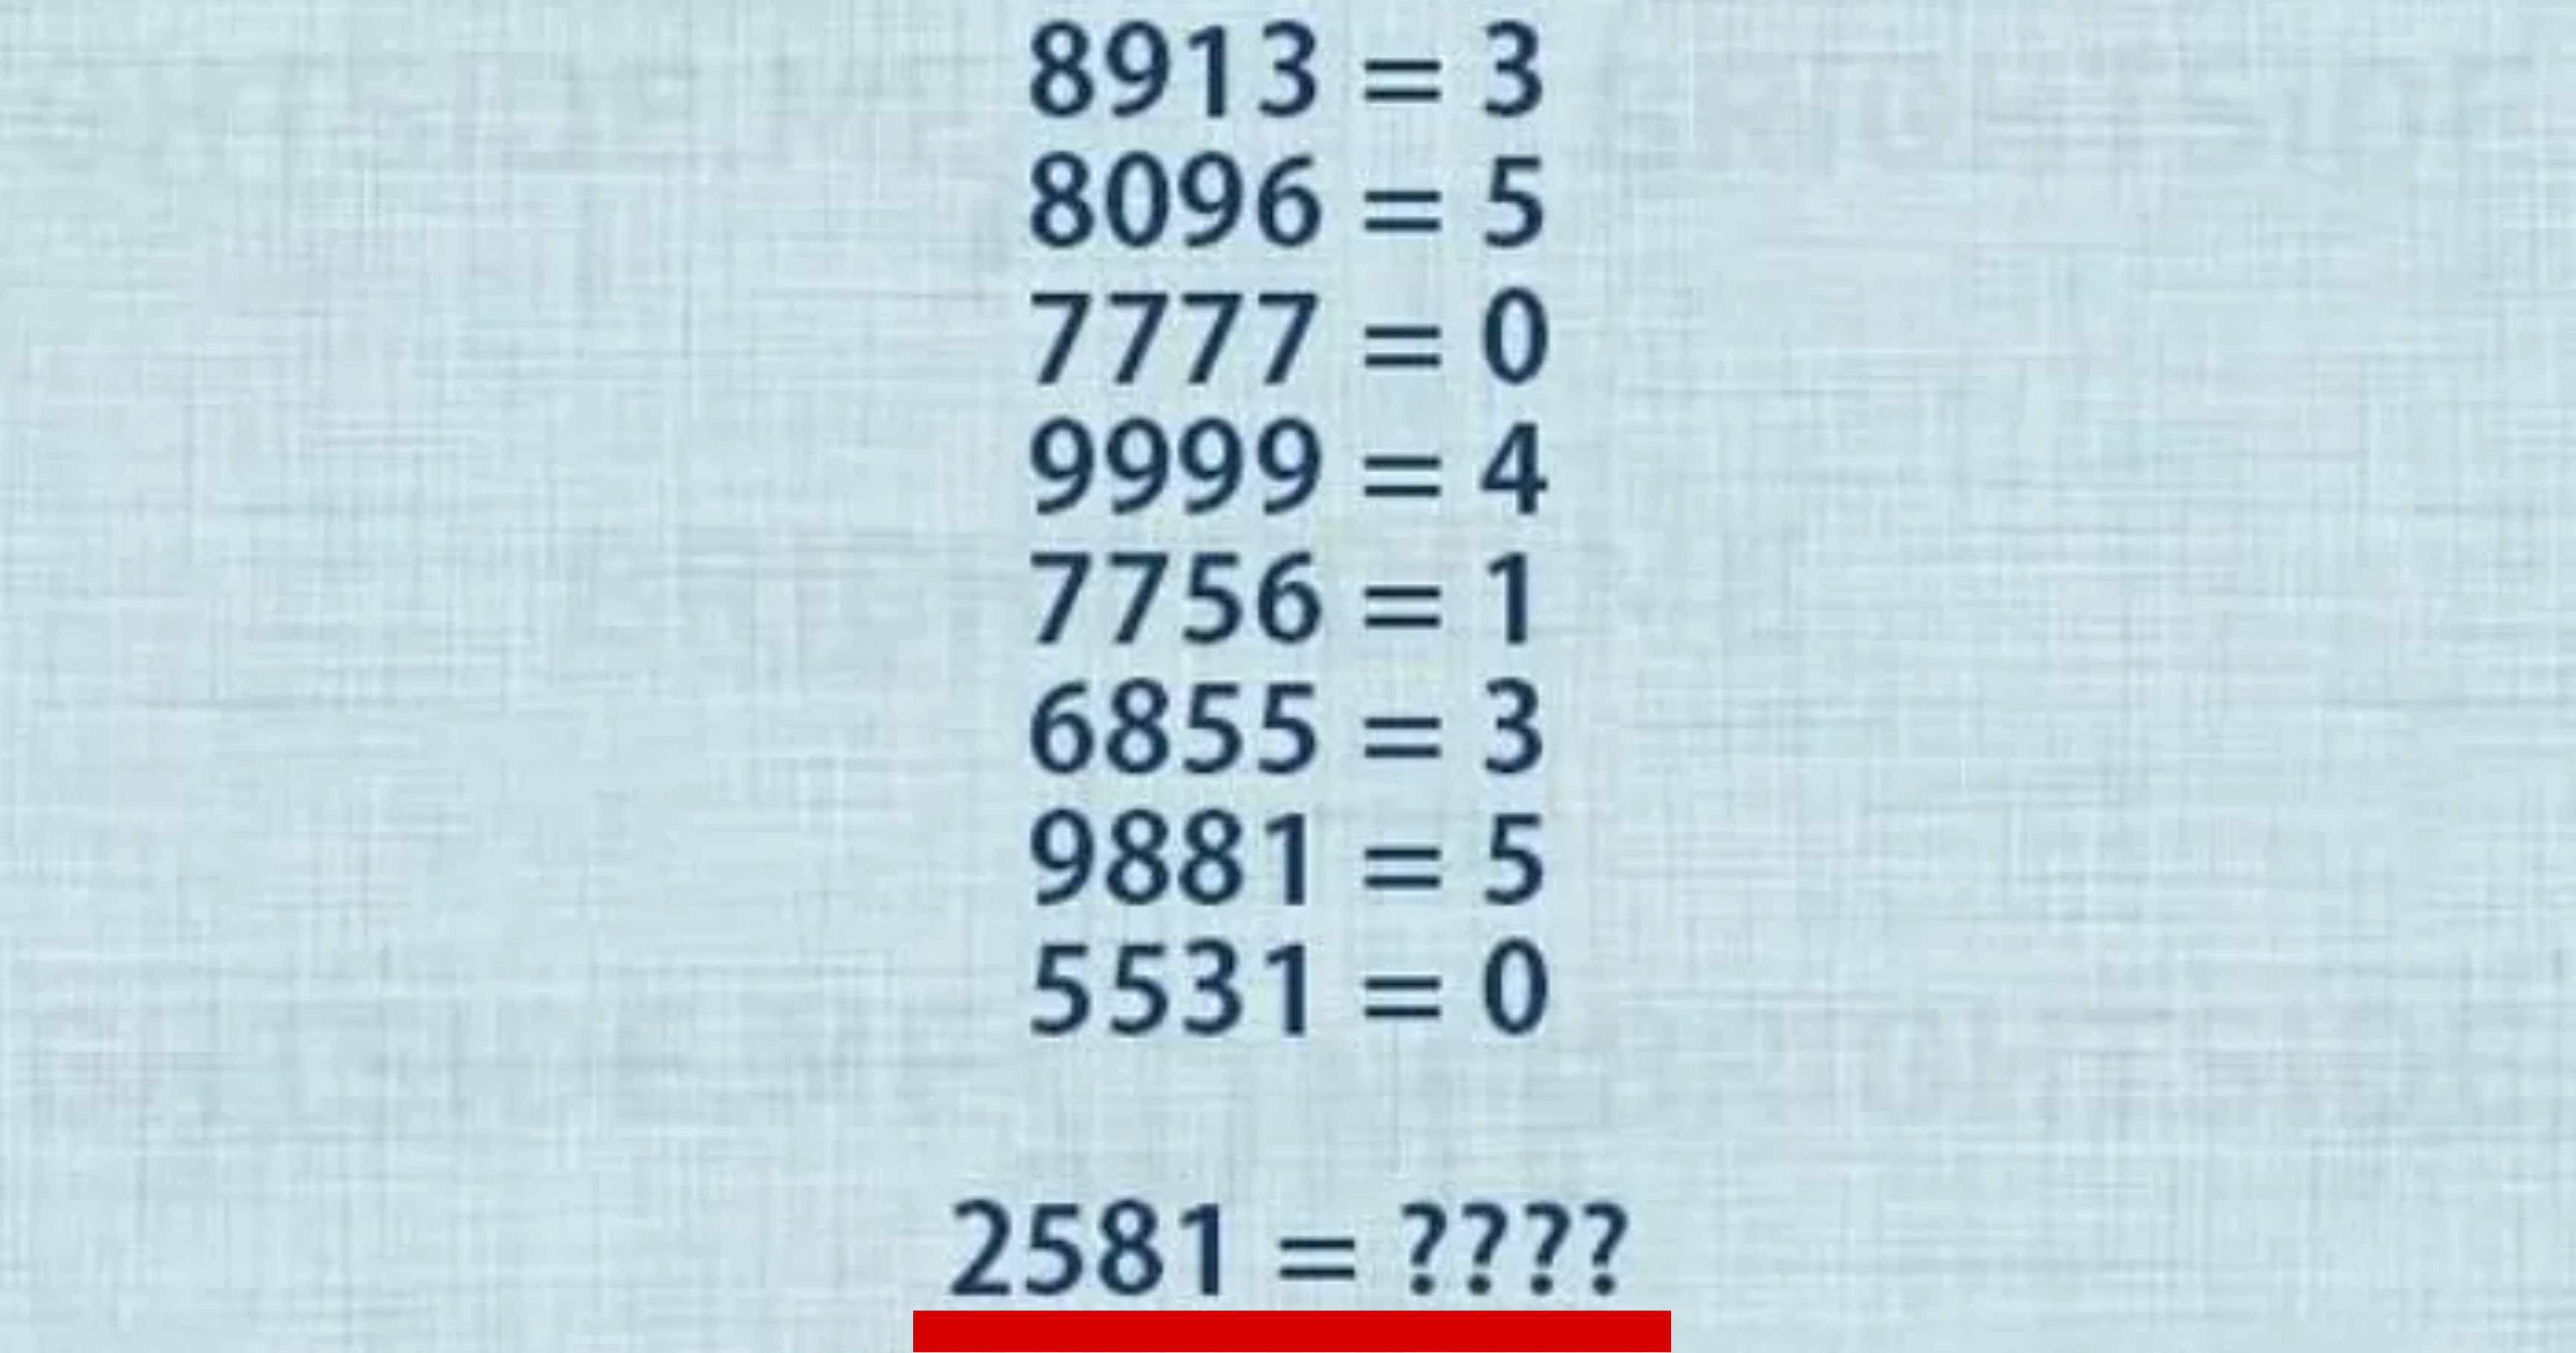 5c6b6627 8e86 45db 9091 bab16a80e7f3.jpeg?resize=412,275 - '성인'은 절대 정답 못 맞히는데 초등학생은 보자마자 푼다는 고난이도 '수학 문제'